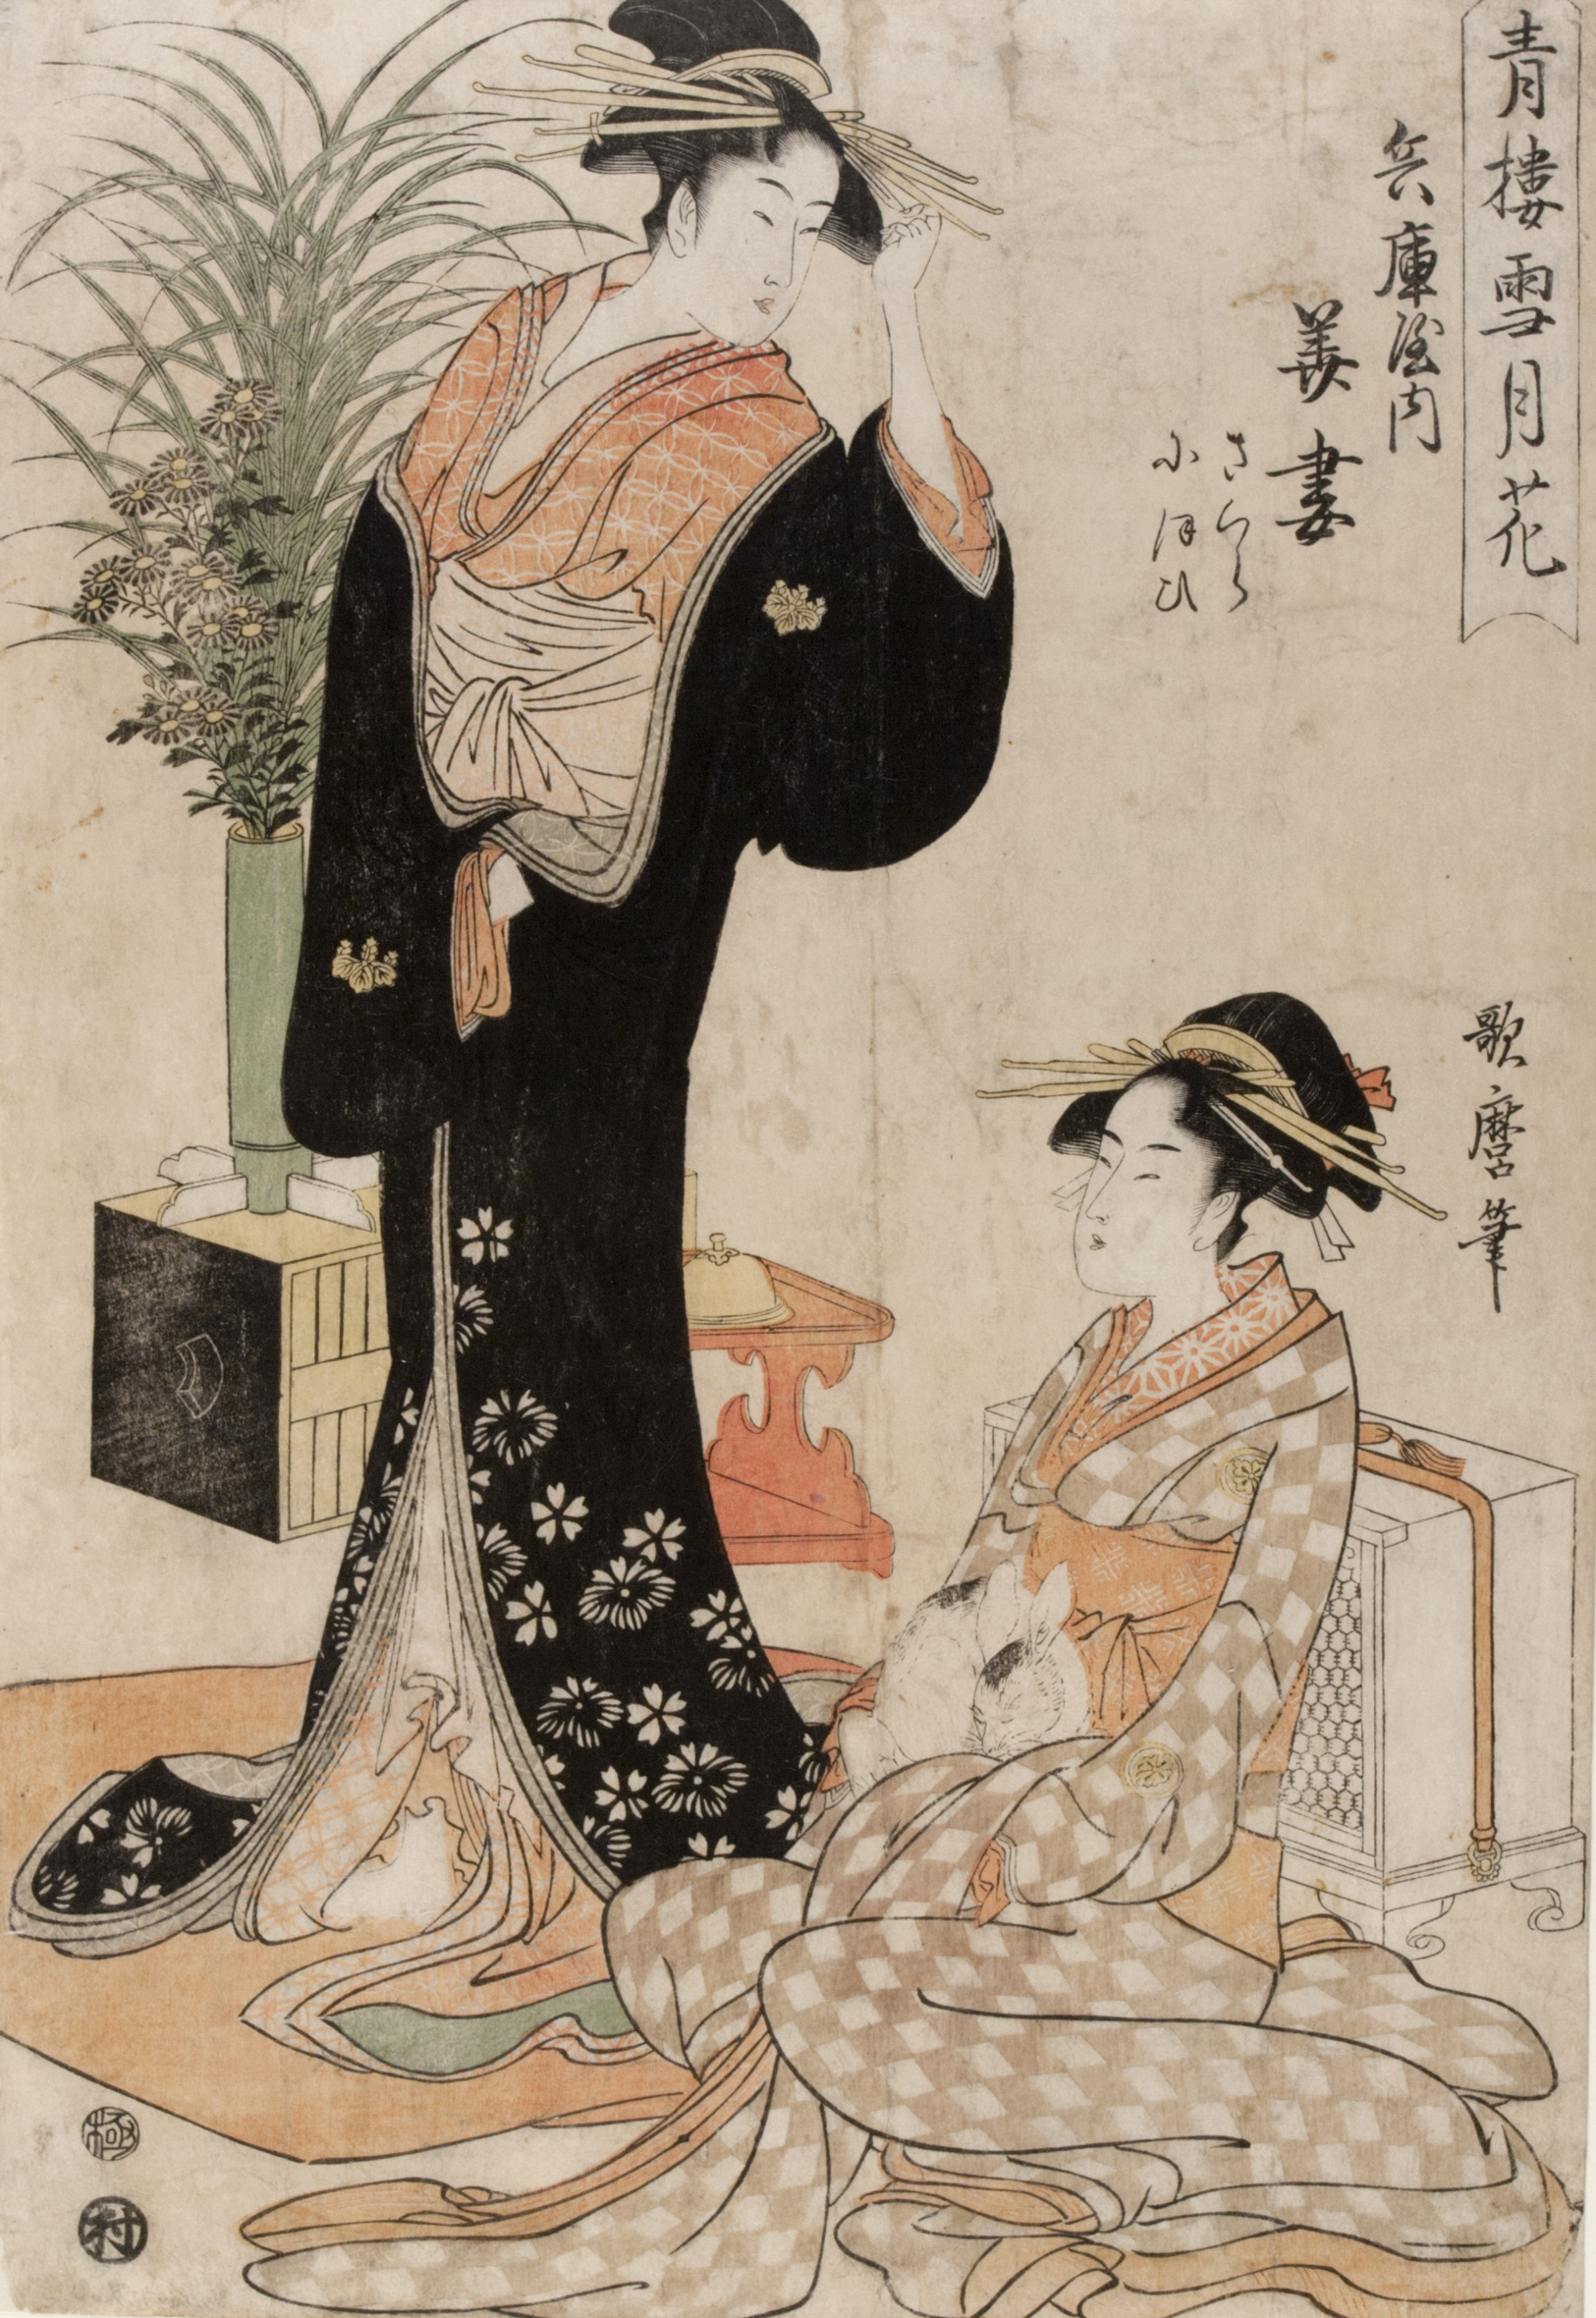 De Courtisane Hanazuma van het Hyōgoya Huis en Haar Metgezel met Haas by Kitagawa Utamaro - 1793 